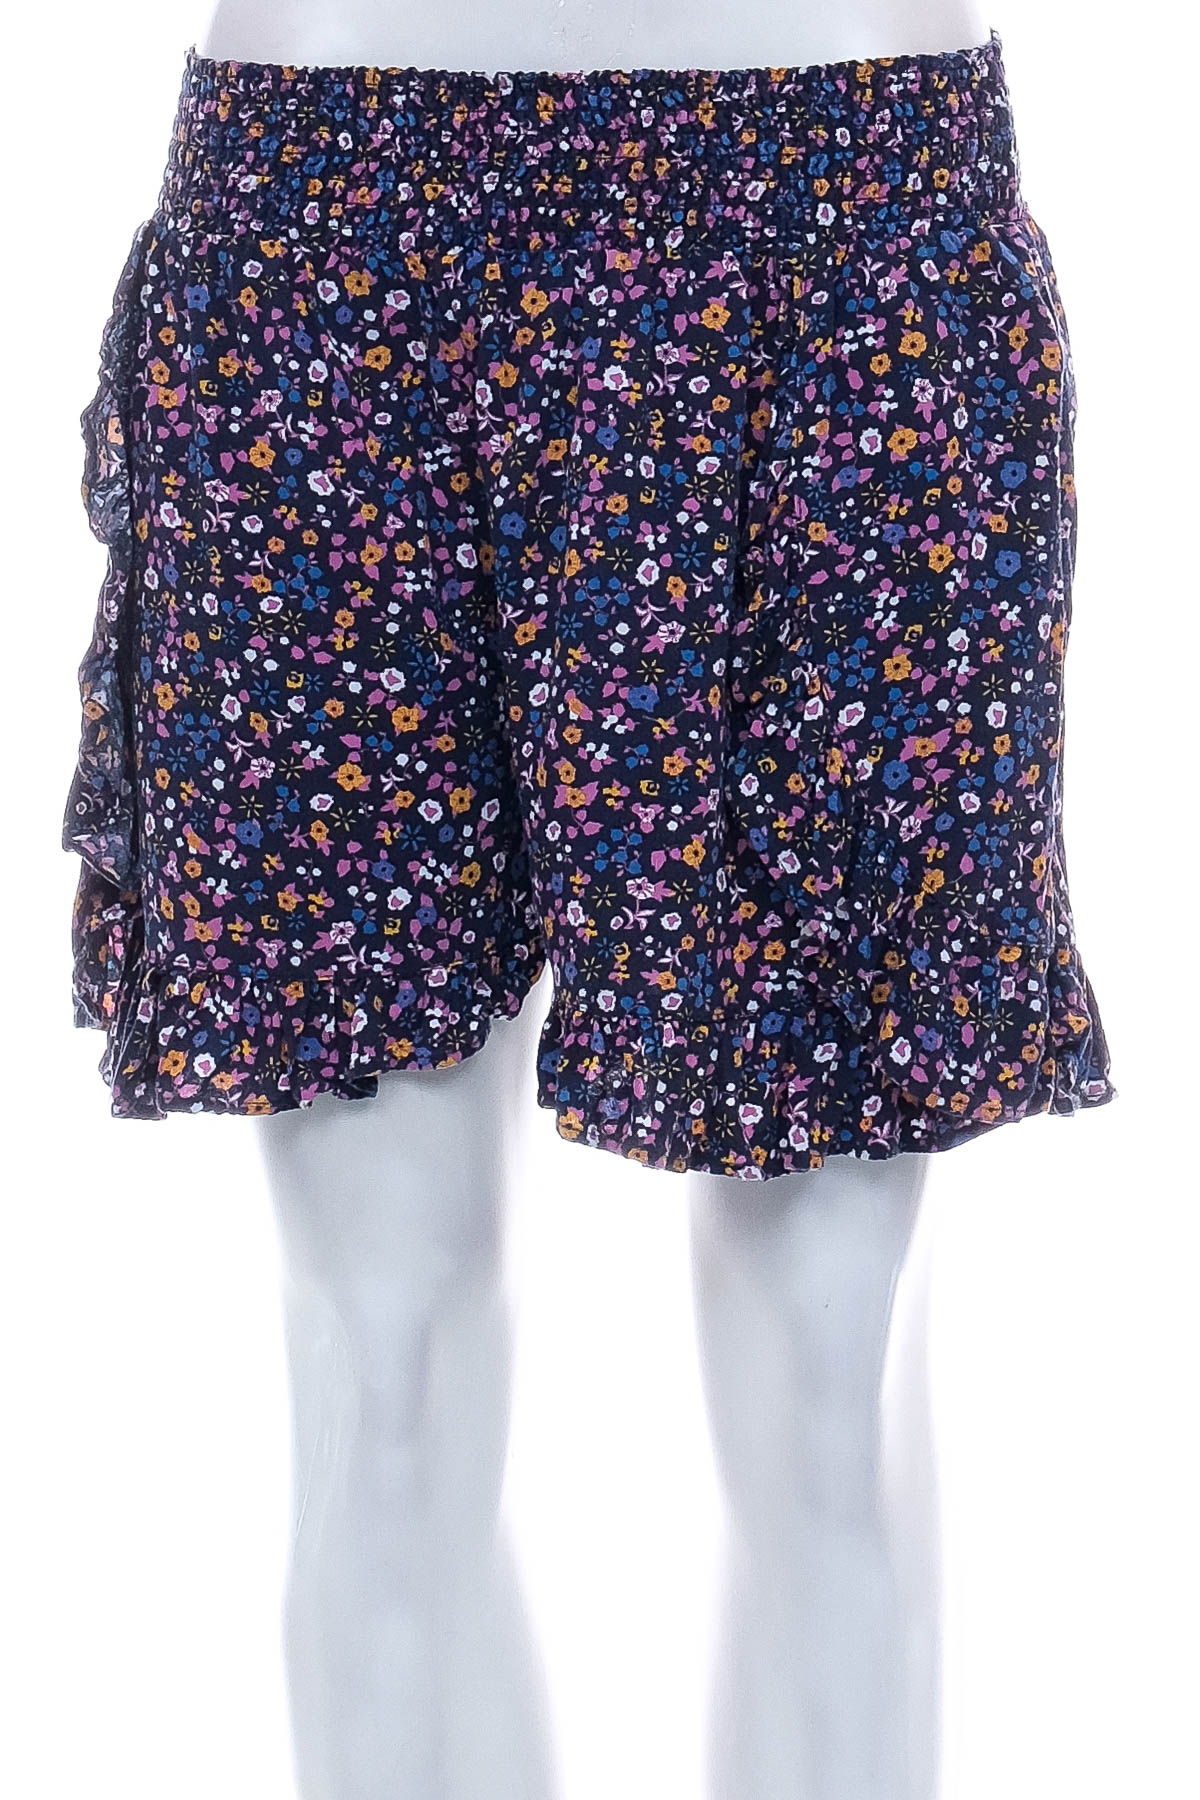 Female shorts - CKH - 0